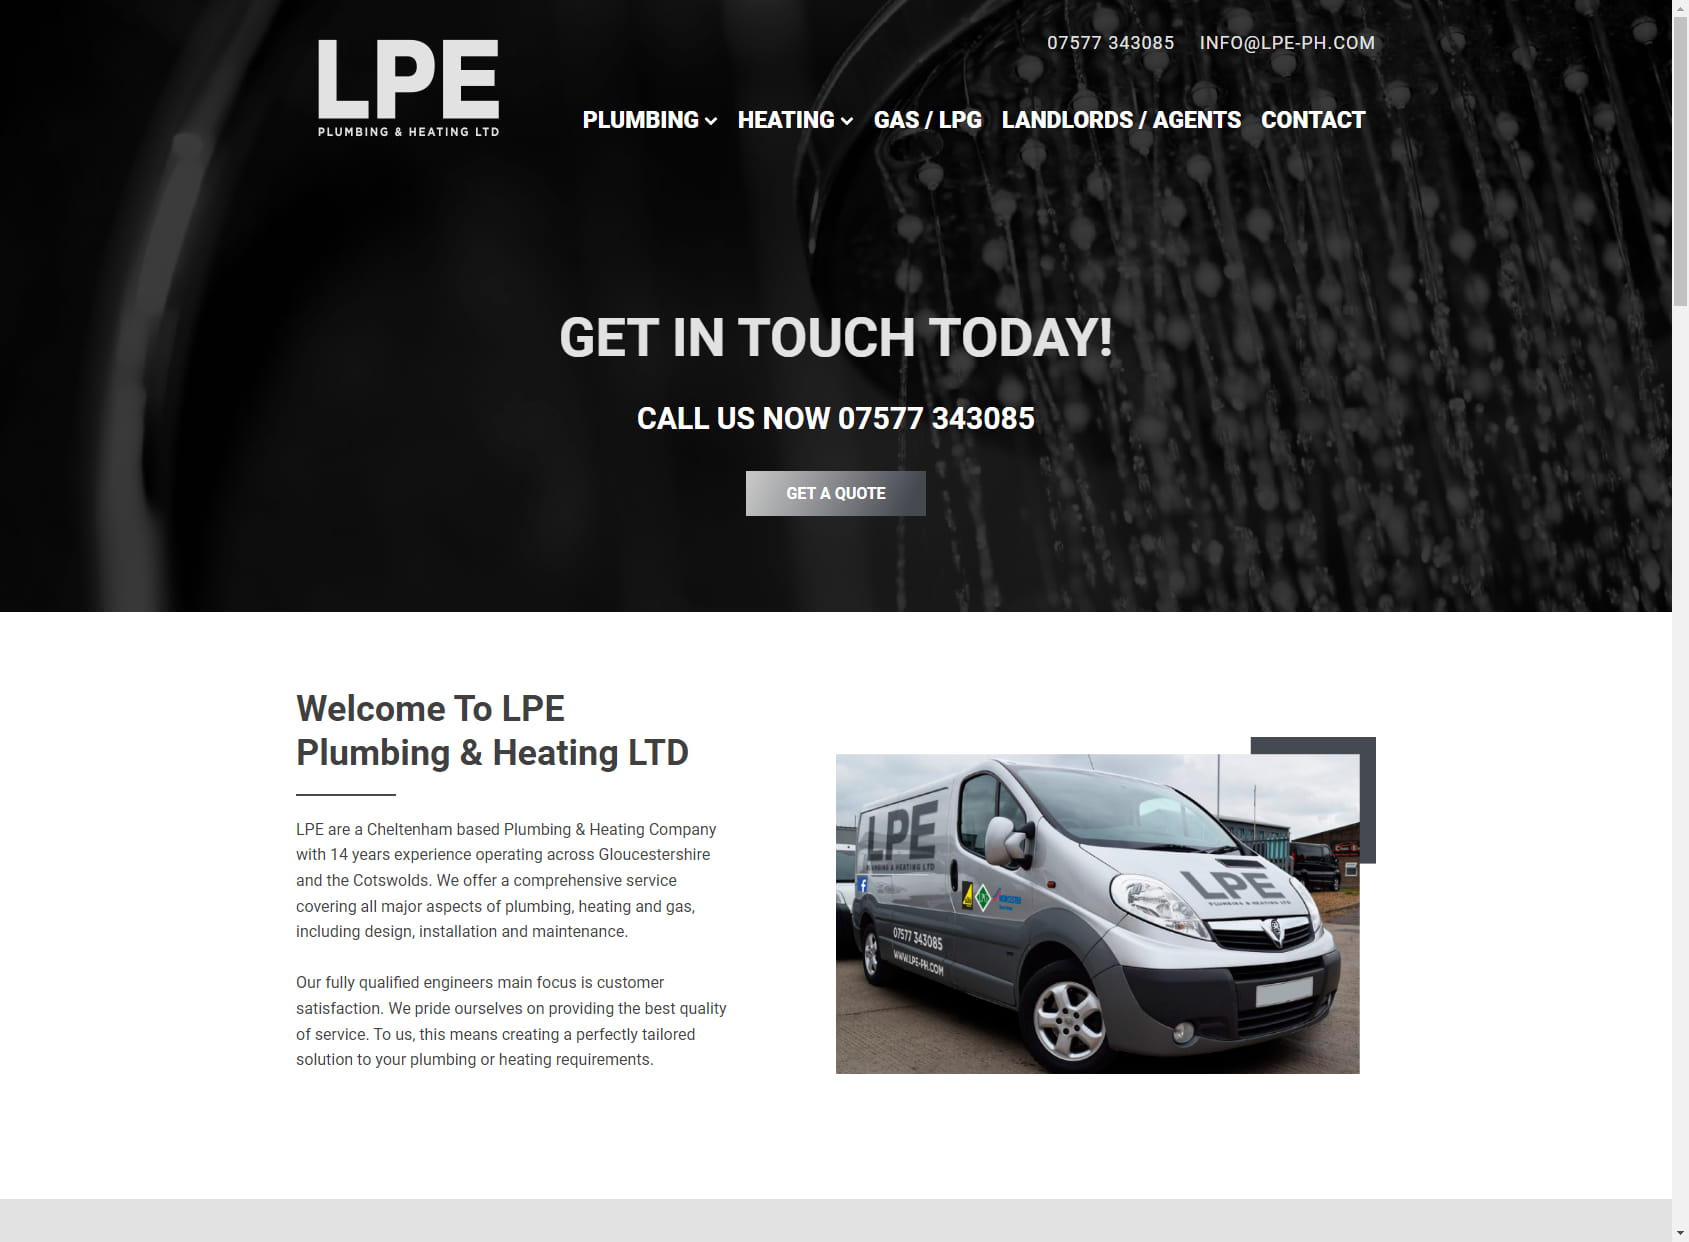 LPE Plumbing & Heating Ltd